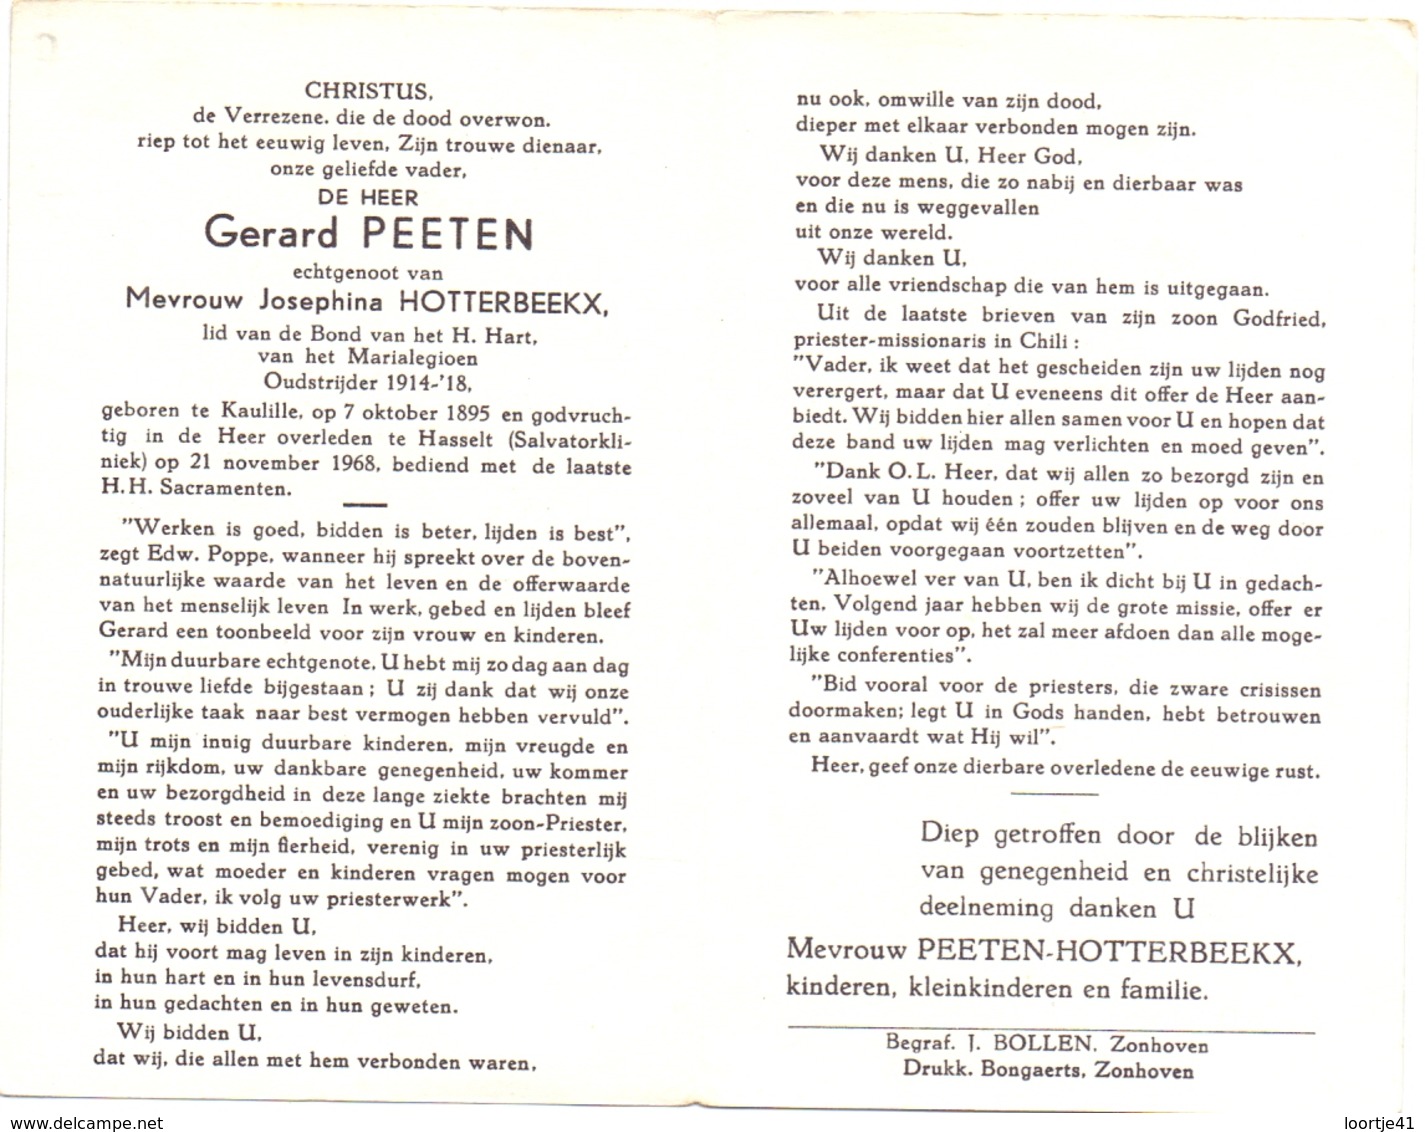 Devotie Doodsprentje Overlijden - Oudstrijder Gerard Peeten Echtg J. Hotterbeekx - Kaulille 1895 - Hasselt 1968 - Décès